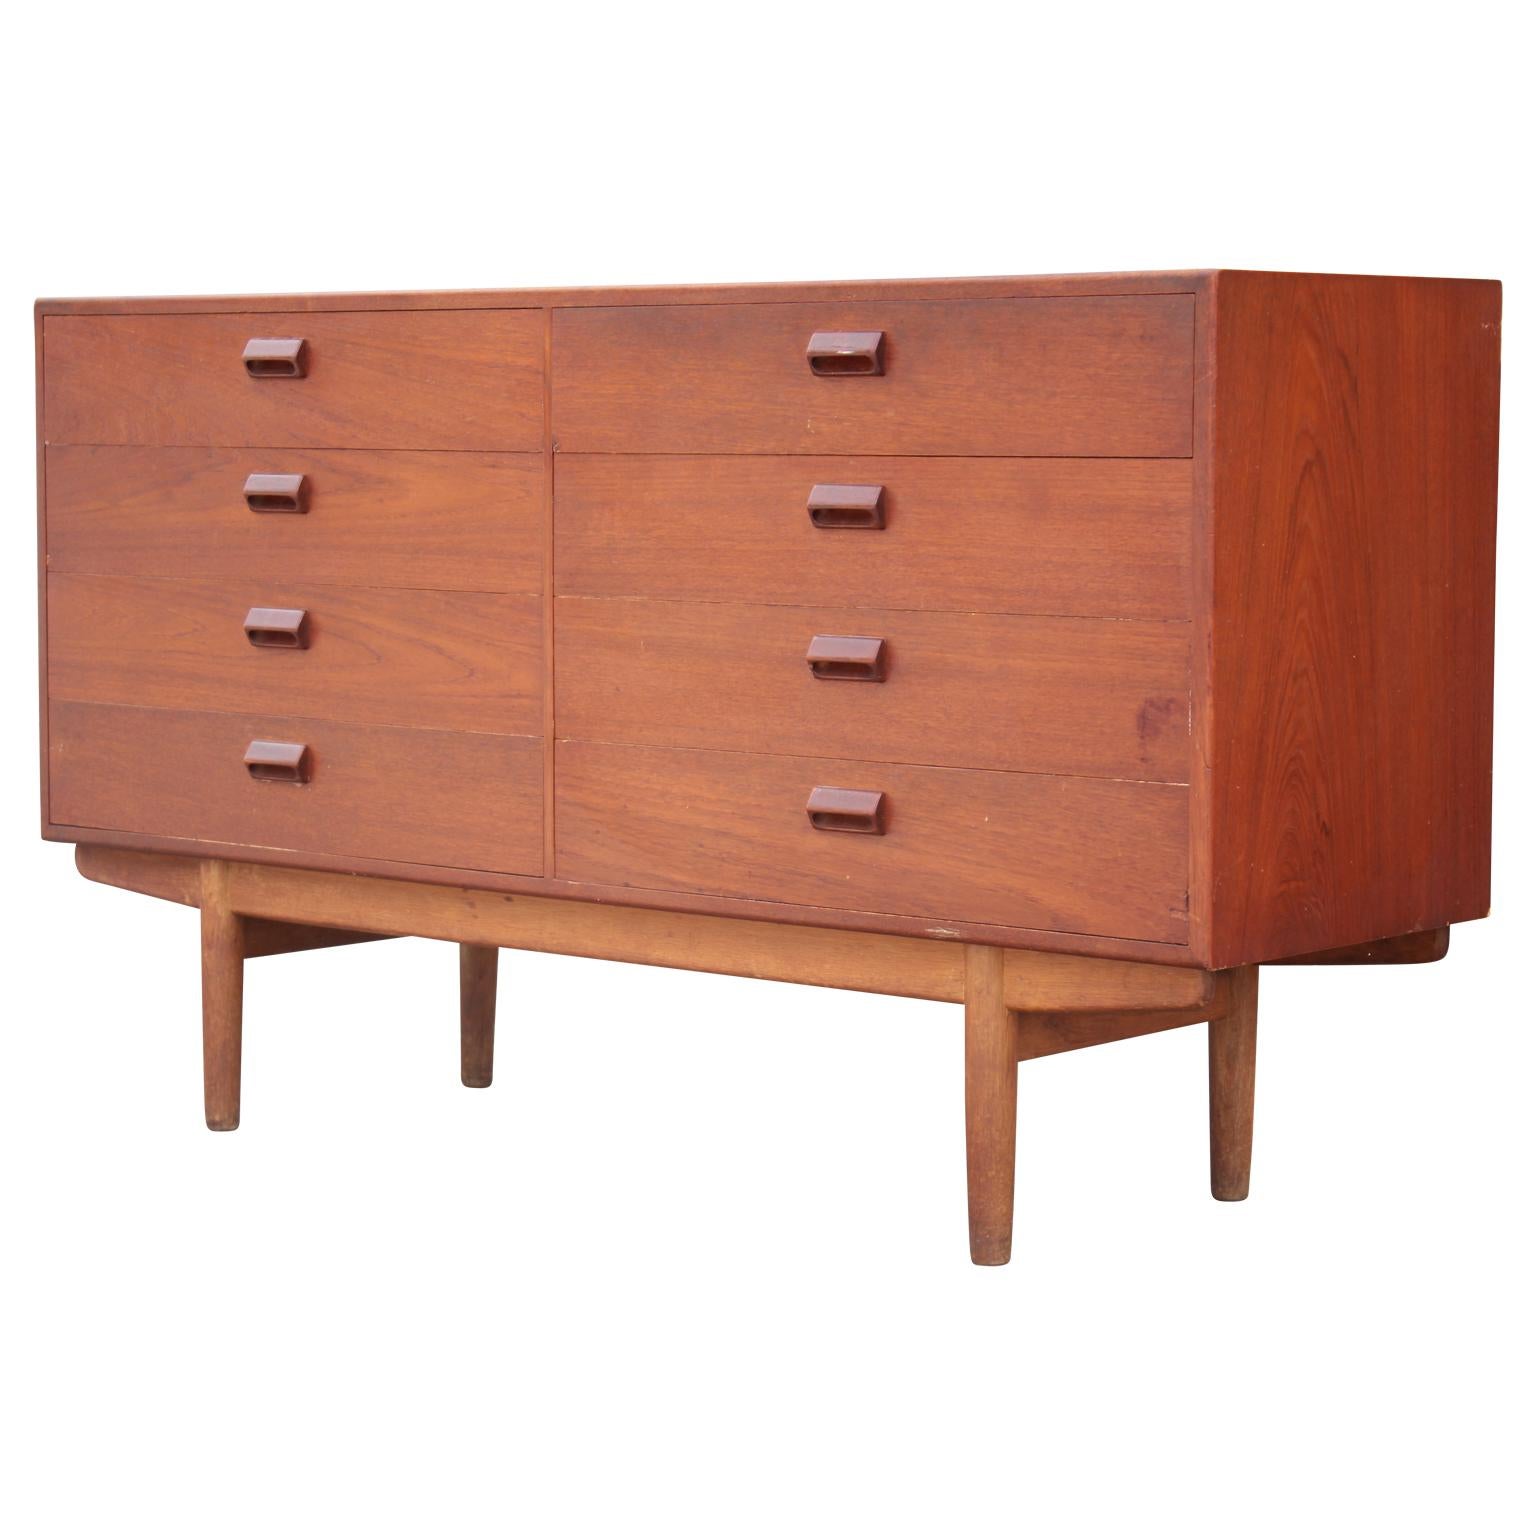 Gorgeous Danish modern eight-drawer dresser designed by Børge Mogensen for Soborg Mobler in the 1950s.